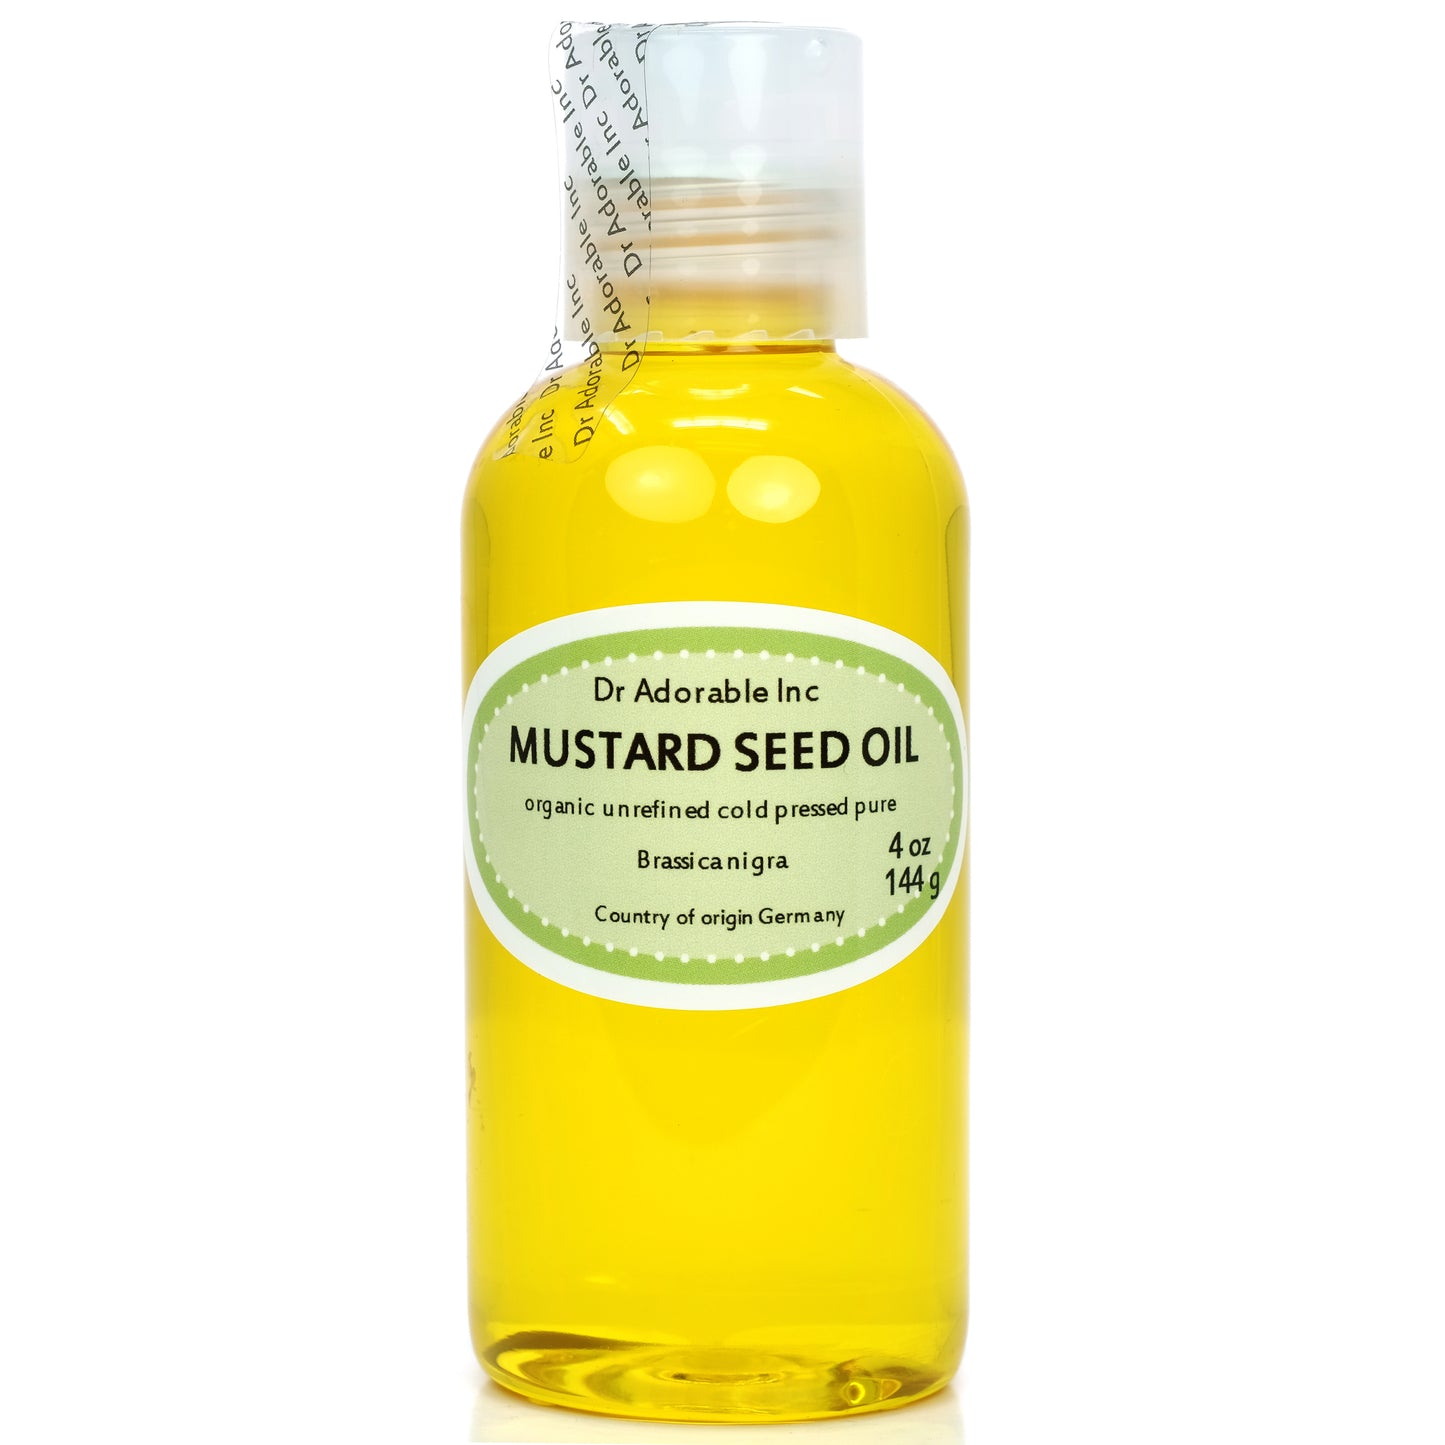 Mustard Seed Oil - Unrefined 100% Pure Natural Premium Organic Cold Pressed